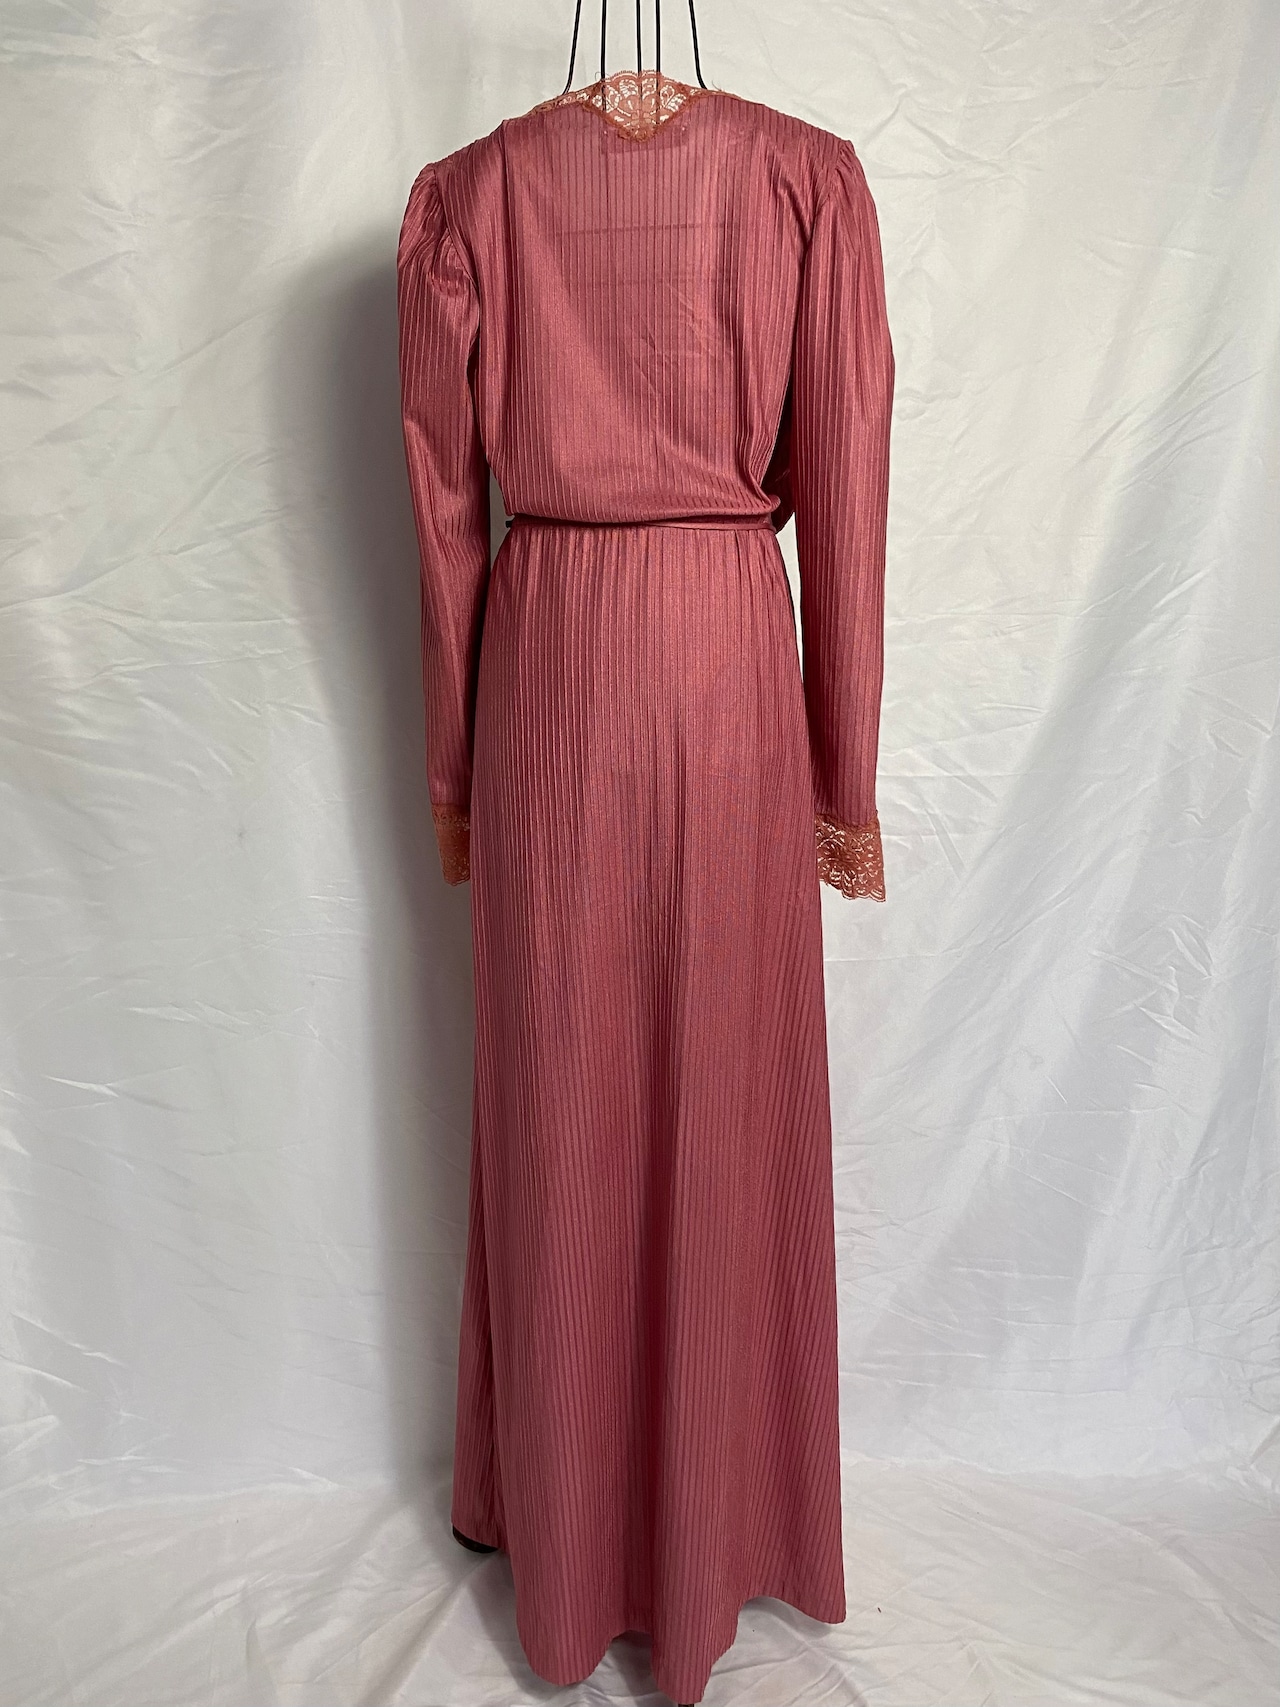 70’s Lingerie dress Made in U.S.A